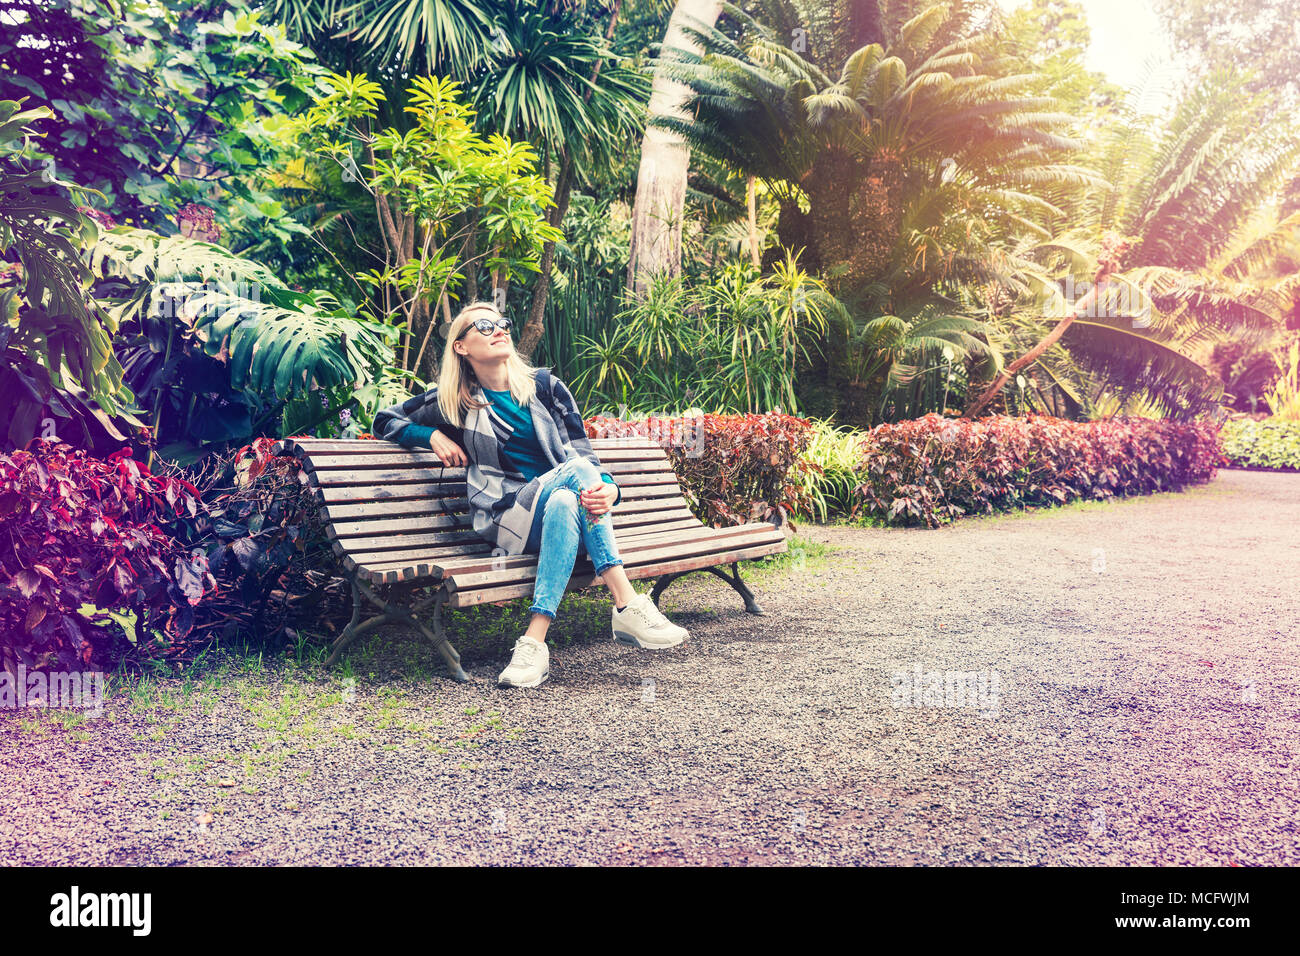 Femme assise et reposant sur l'audience à Botanical garden park Banque D'Images